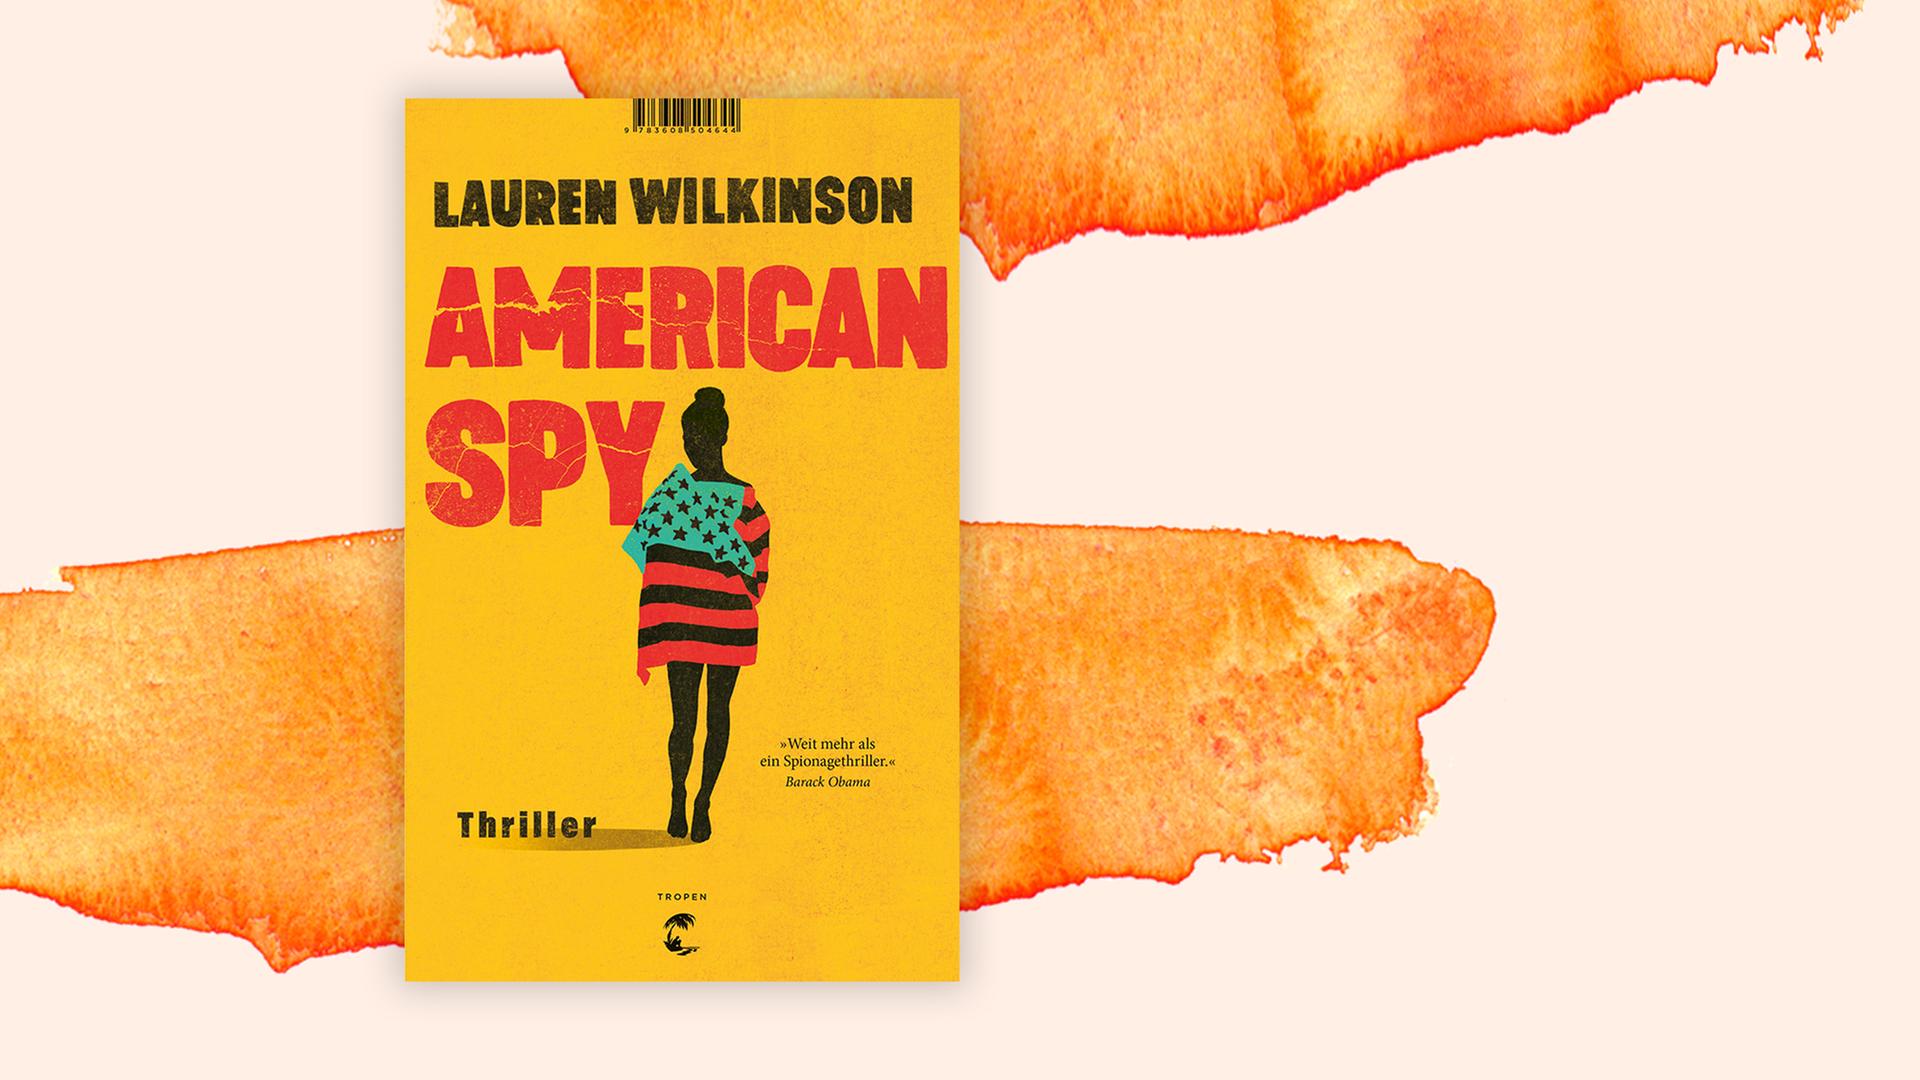 Buchcover des Krimis "American Spy" von Lauren Wilkinson